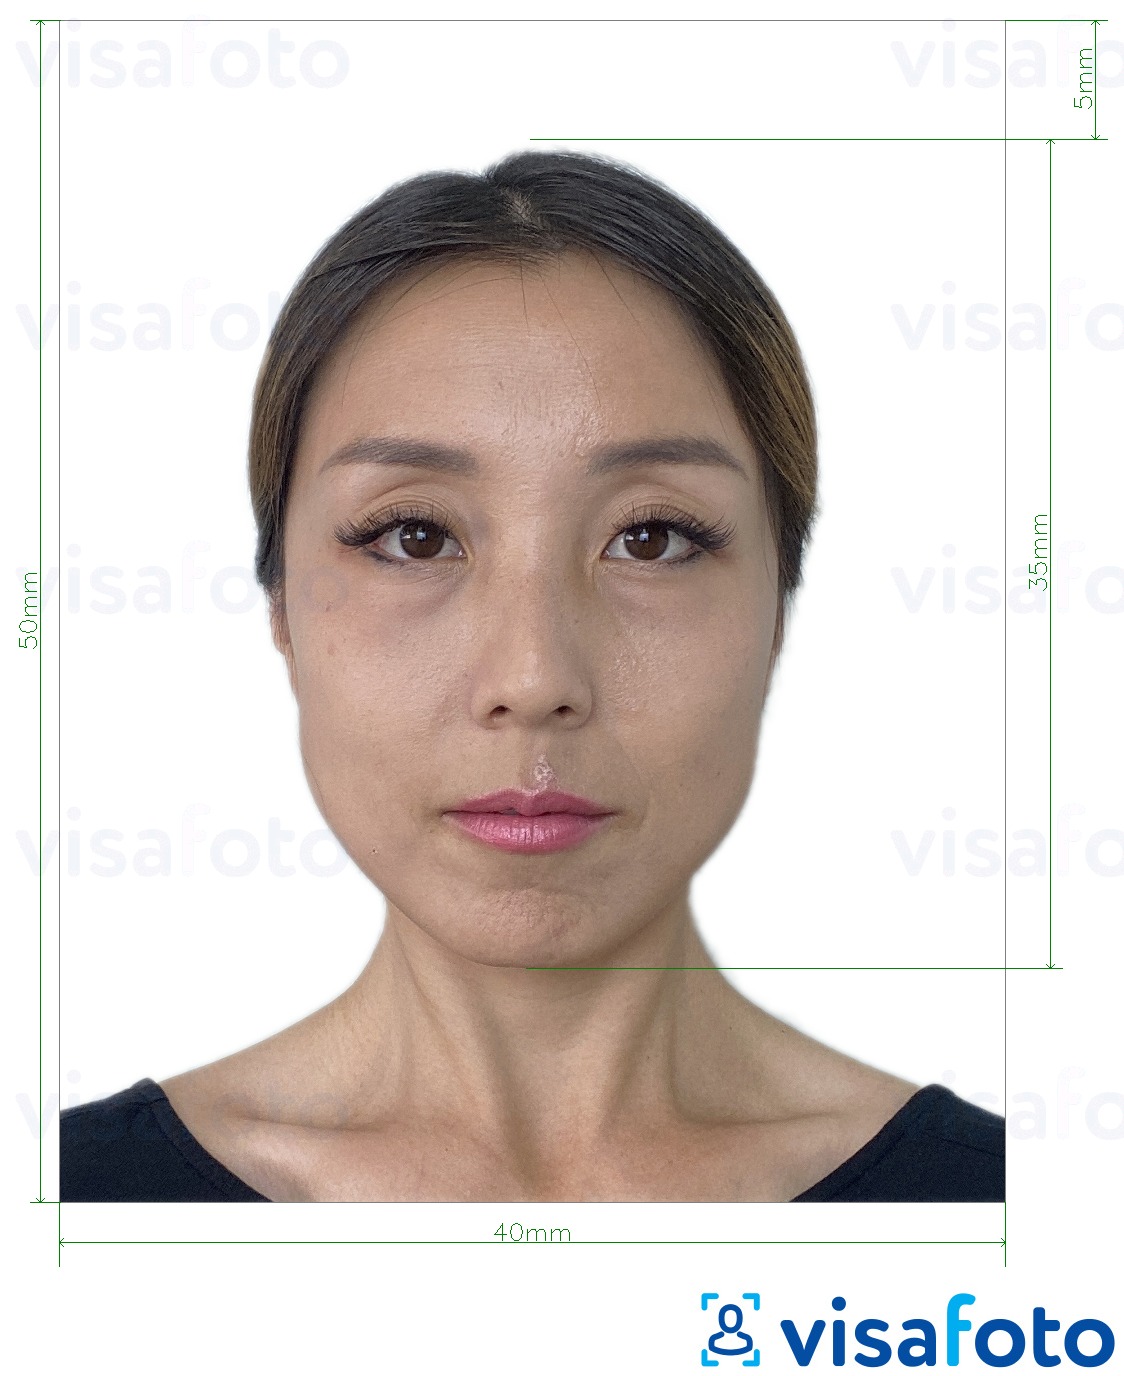 Príklad fotografie pre Hongkonský občiansky preukaz 4x5 cm s presnou špecifikáciou veľkosti